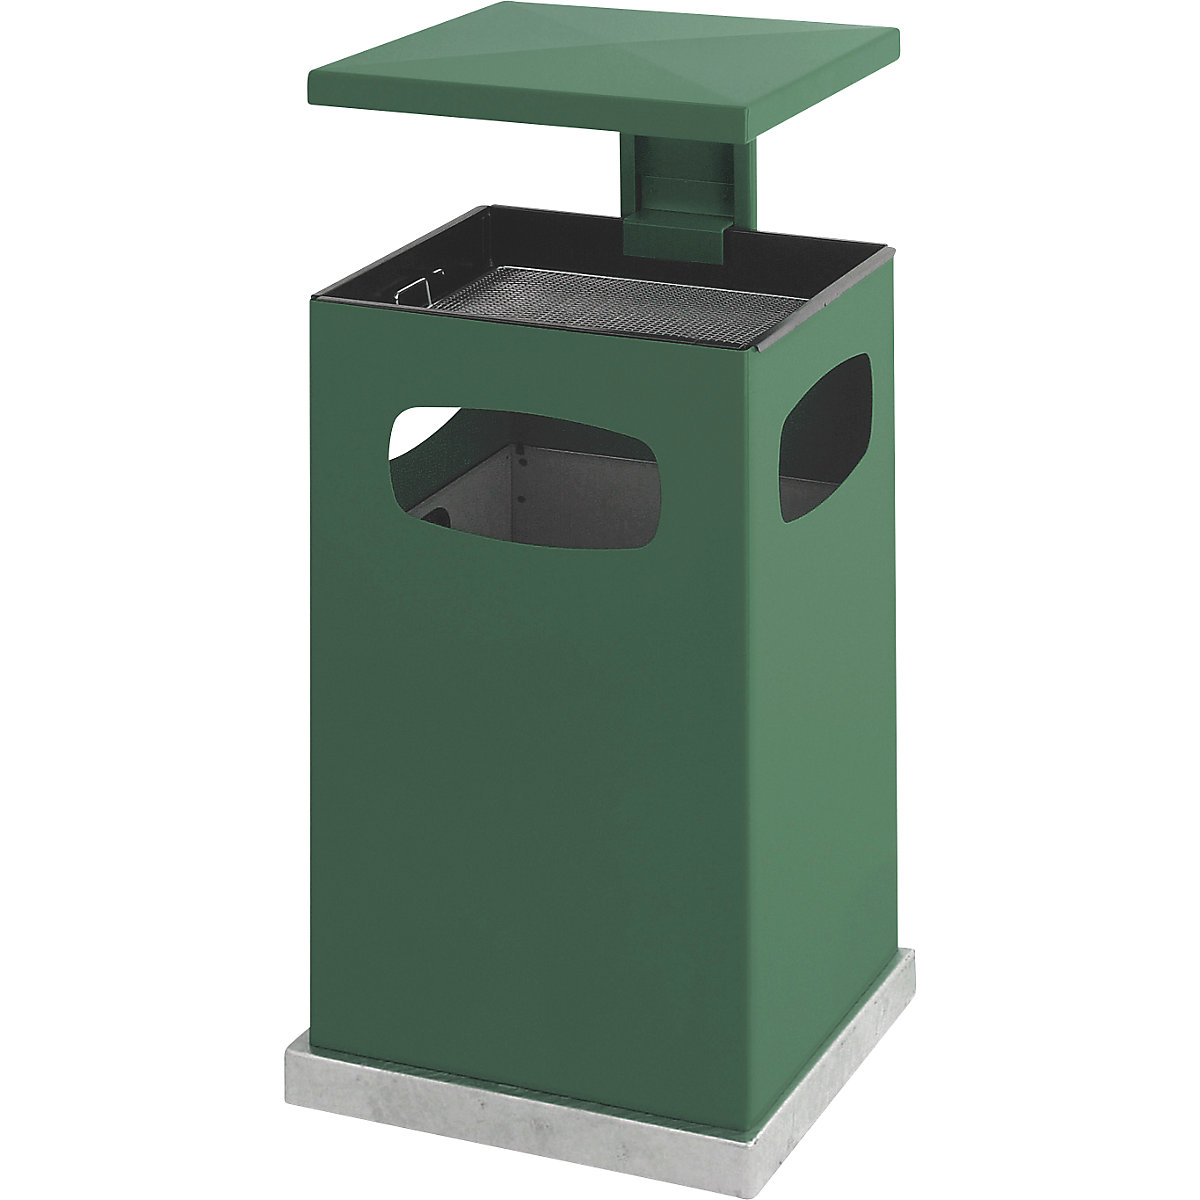 Collecteur de déchets avec cendrier et toit de protection, capacité 72 l, l x h x p 500 x 955 x 500 mm, vert mousse